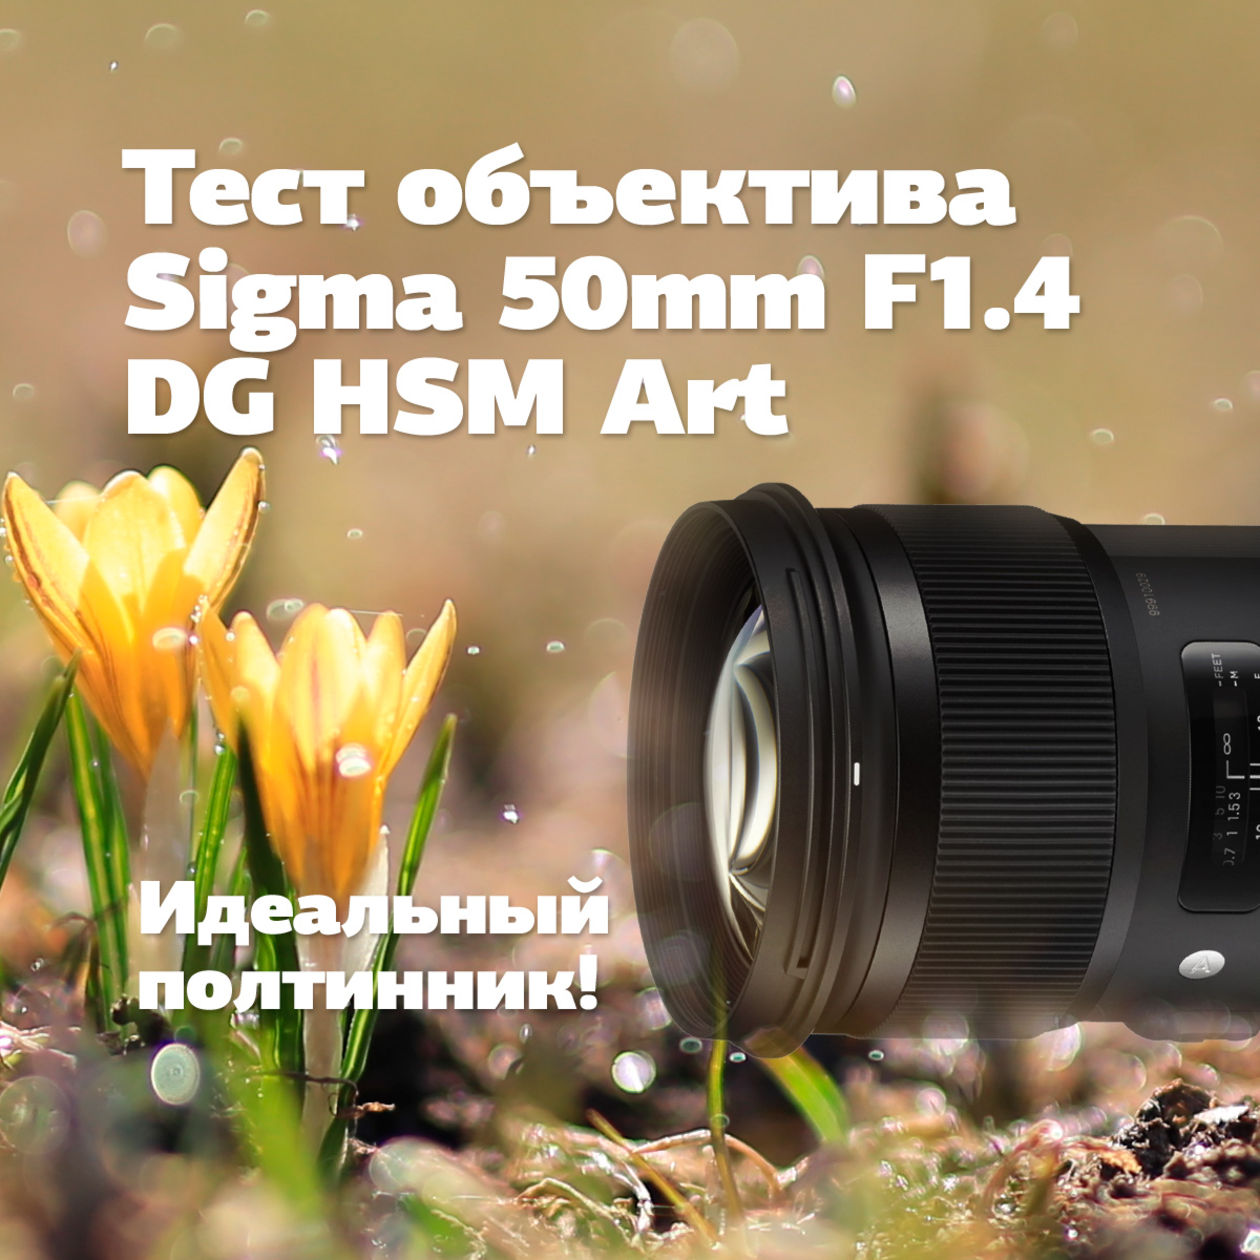 Тест объектива Sigma 50mm F1.4 DG HSM Art